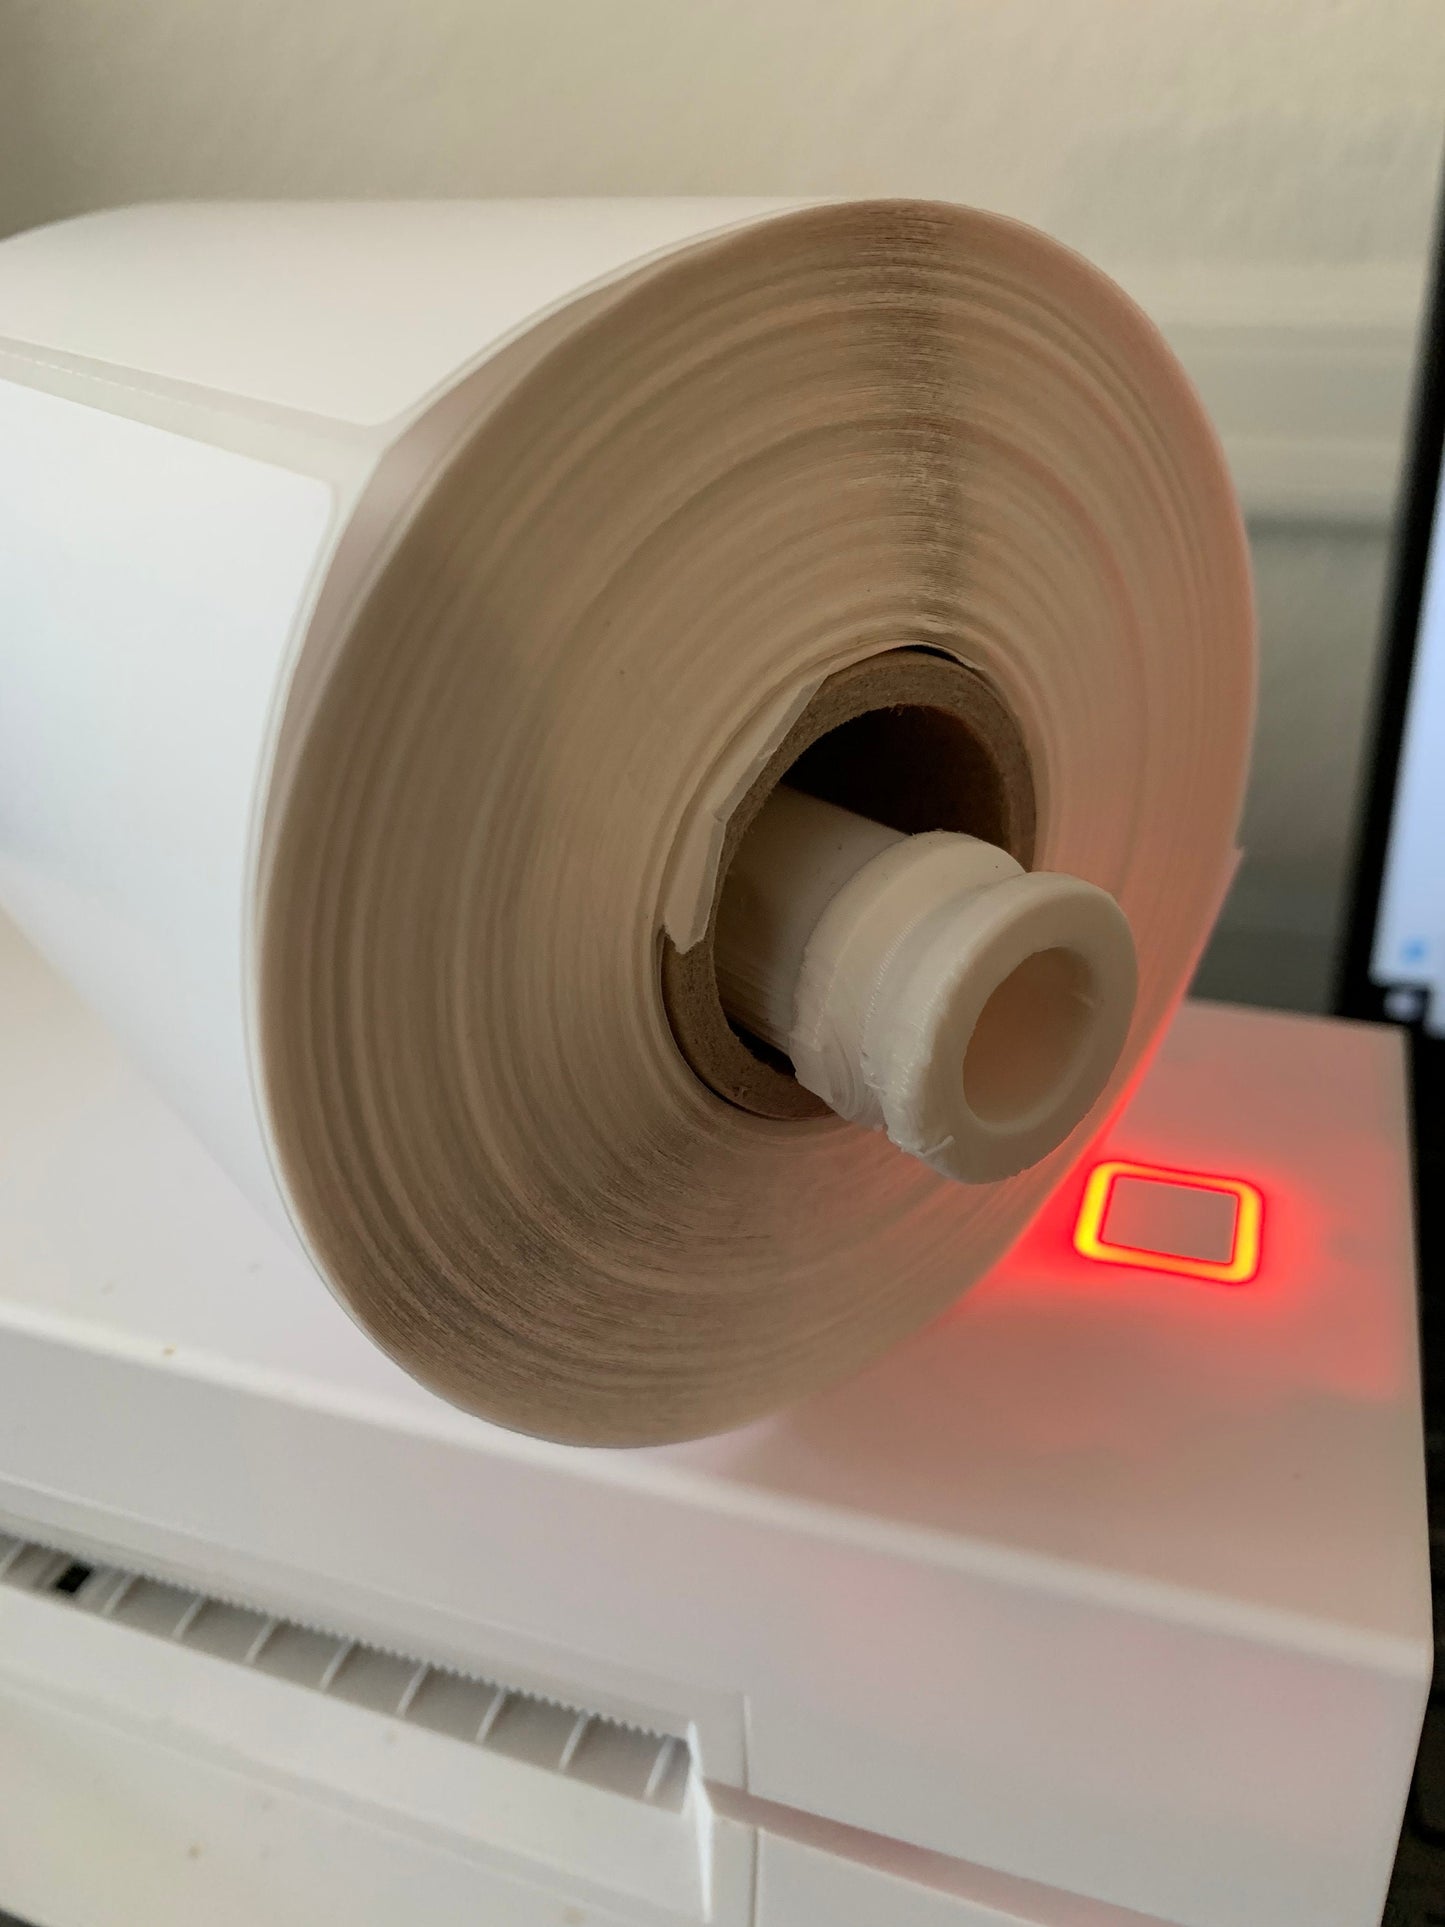 Thermal Printer 4x6 Paper Spool